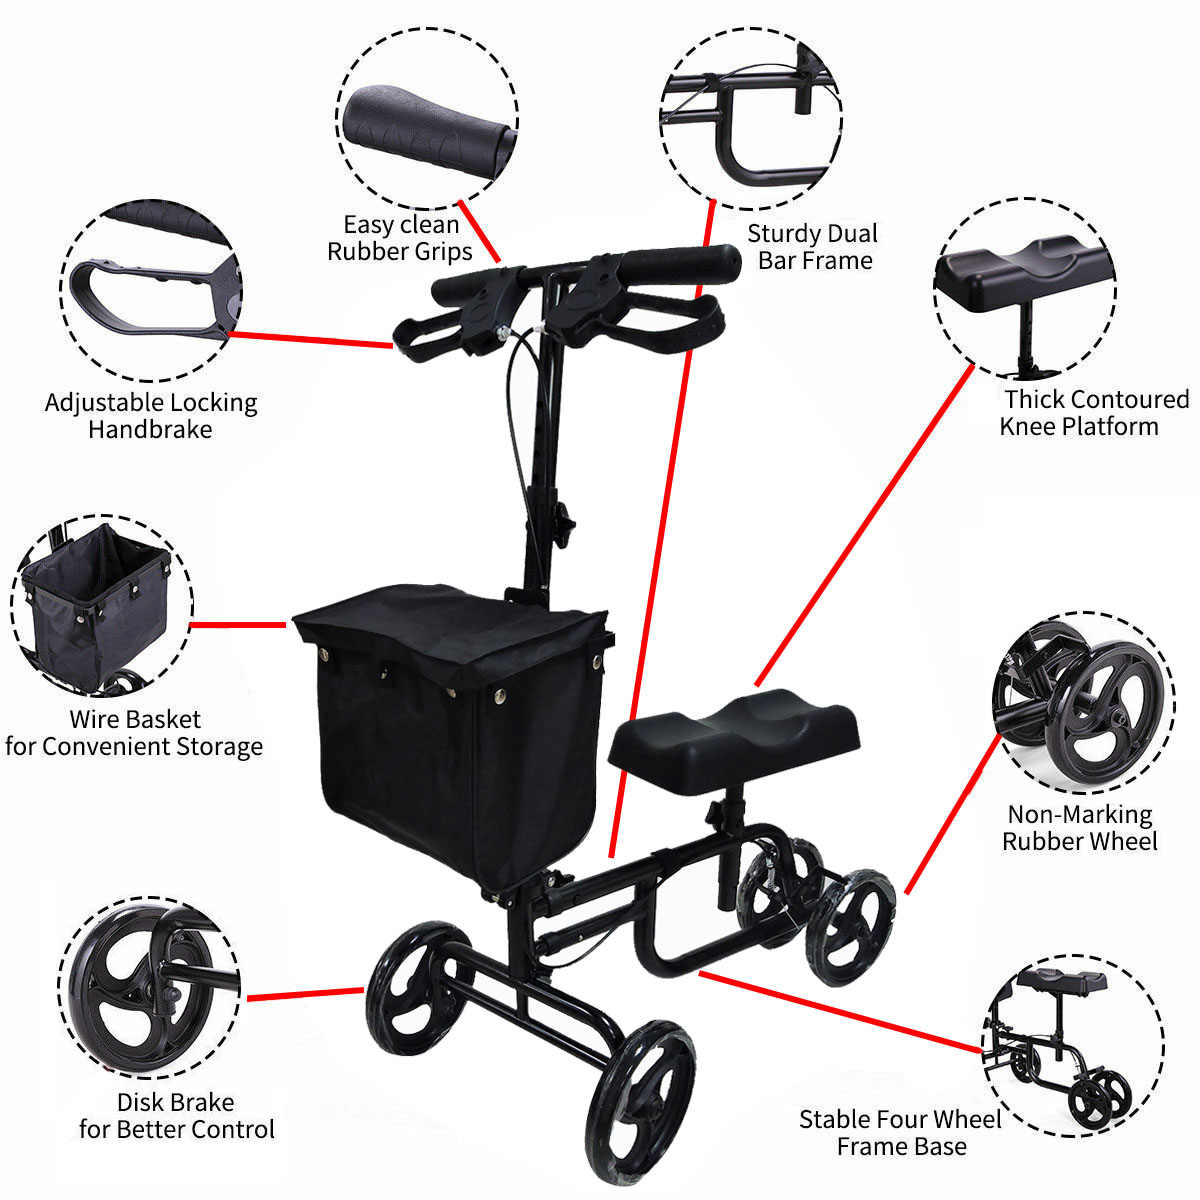 Mobility-Knee-Walker-Scooter-Roller-Crutch-Leg-Steerable-Foldable-Design-Adjustable-Height-Adjustabl-1940054-4